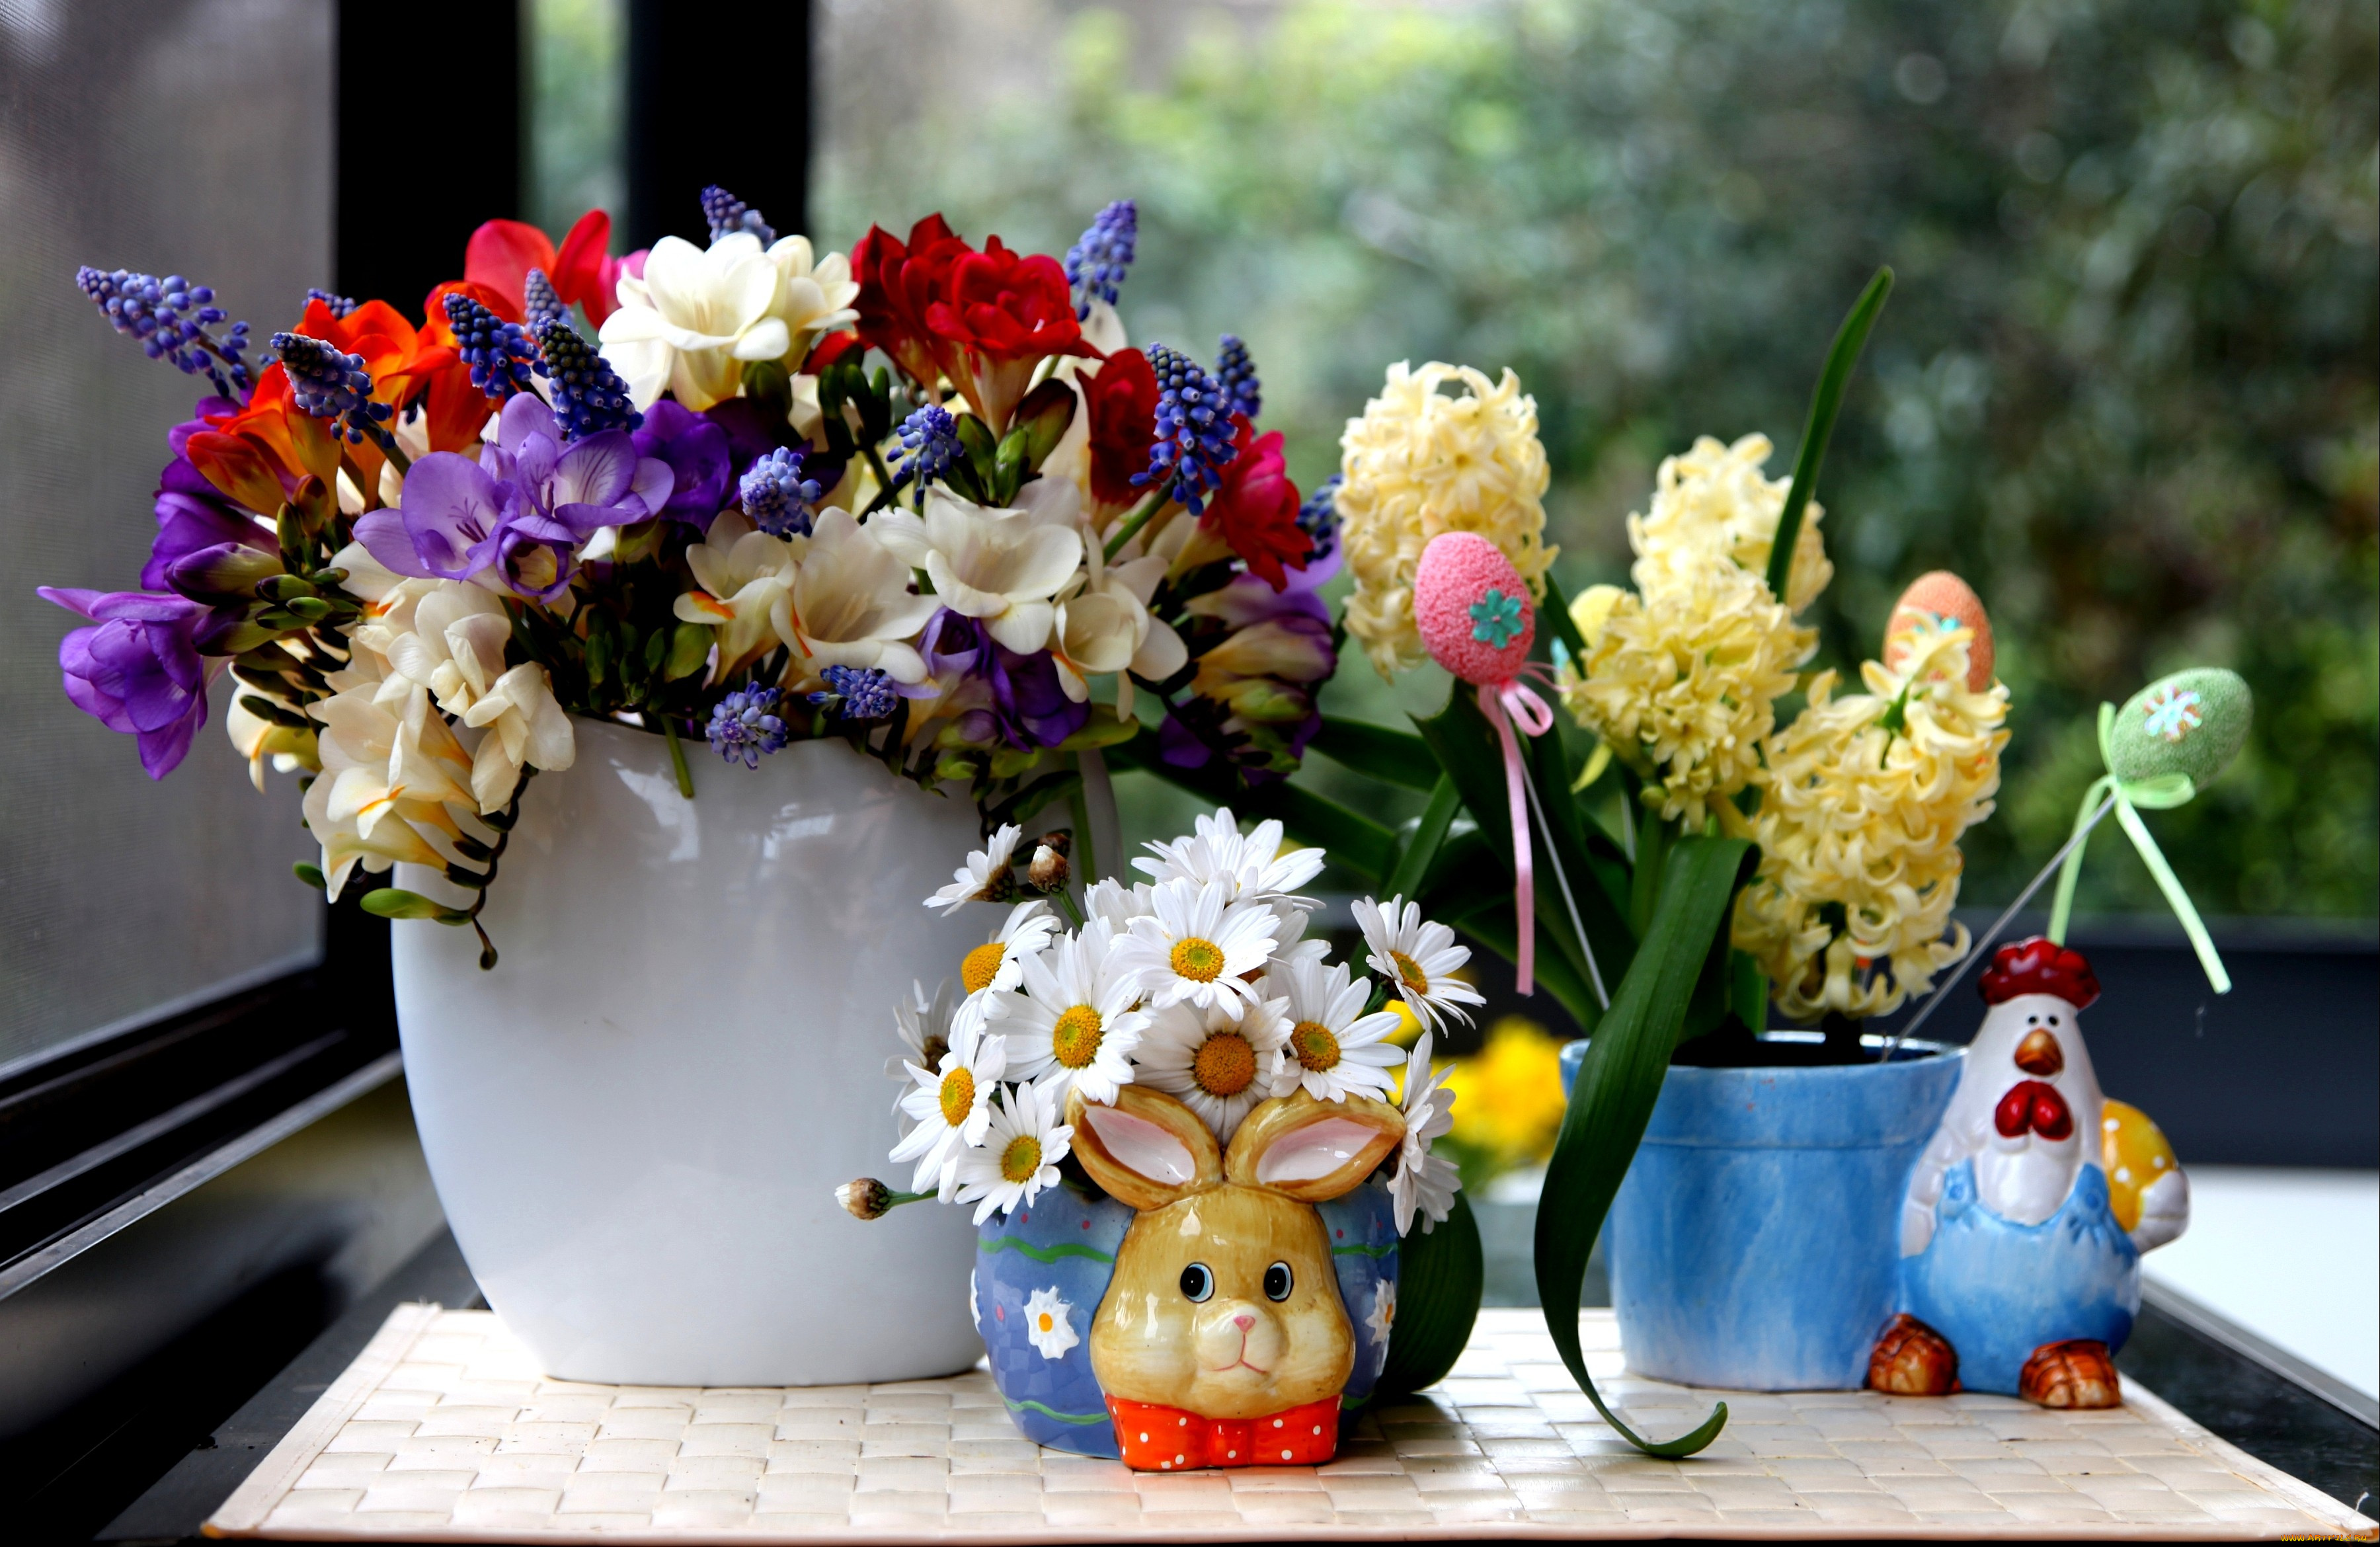 цветы, разные, вместе, вазы, фигурки, фрезия, гиацинт, ромашки